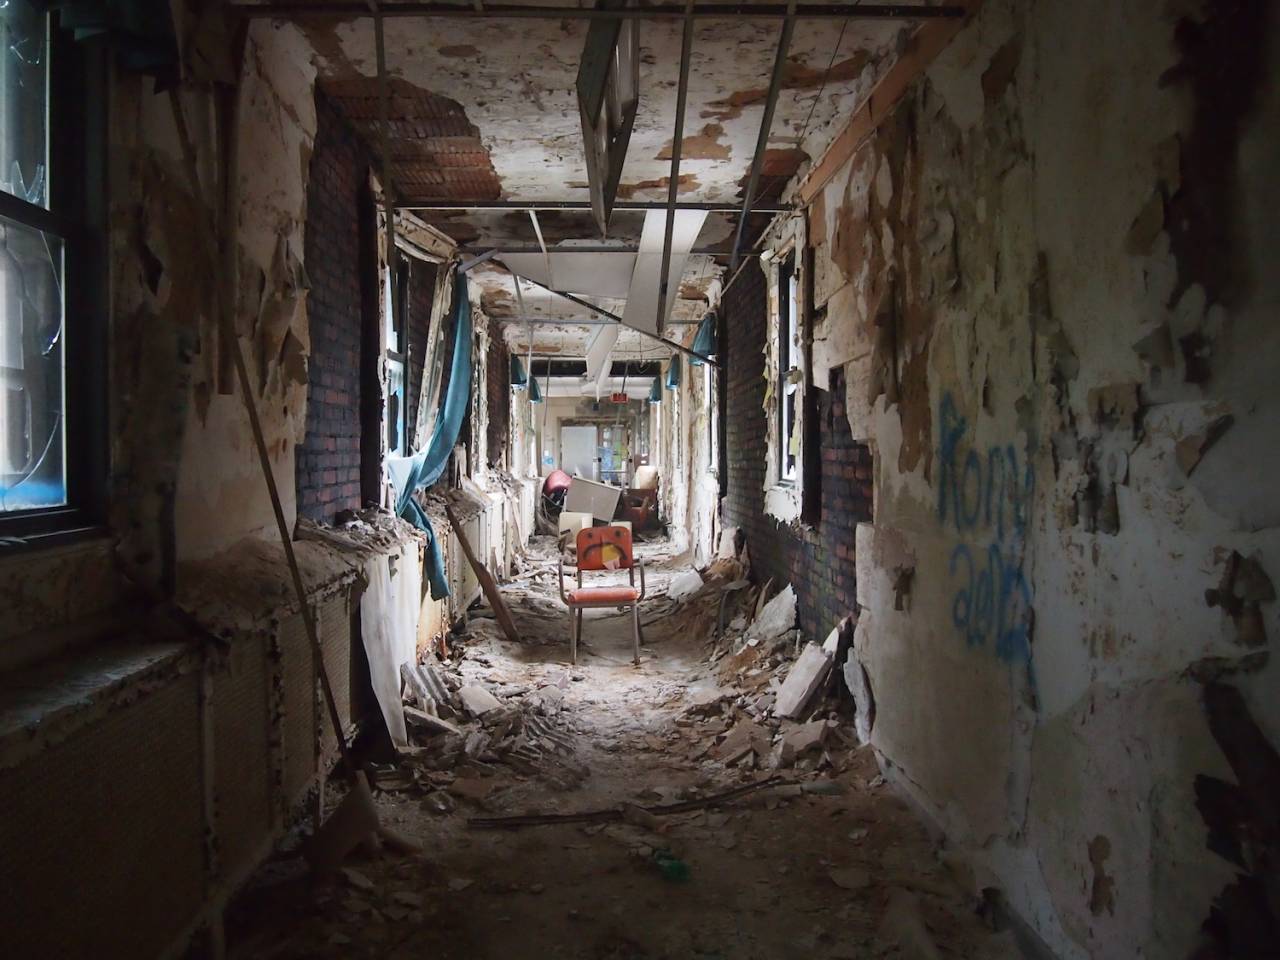 Overbrook asylum photos